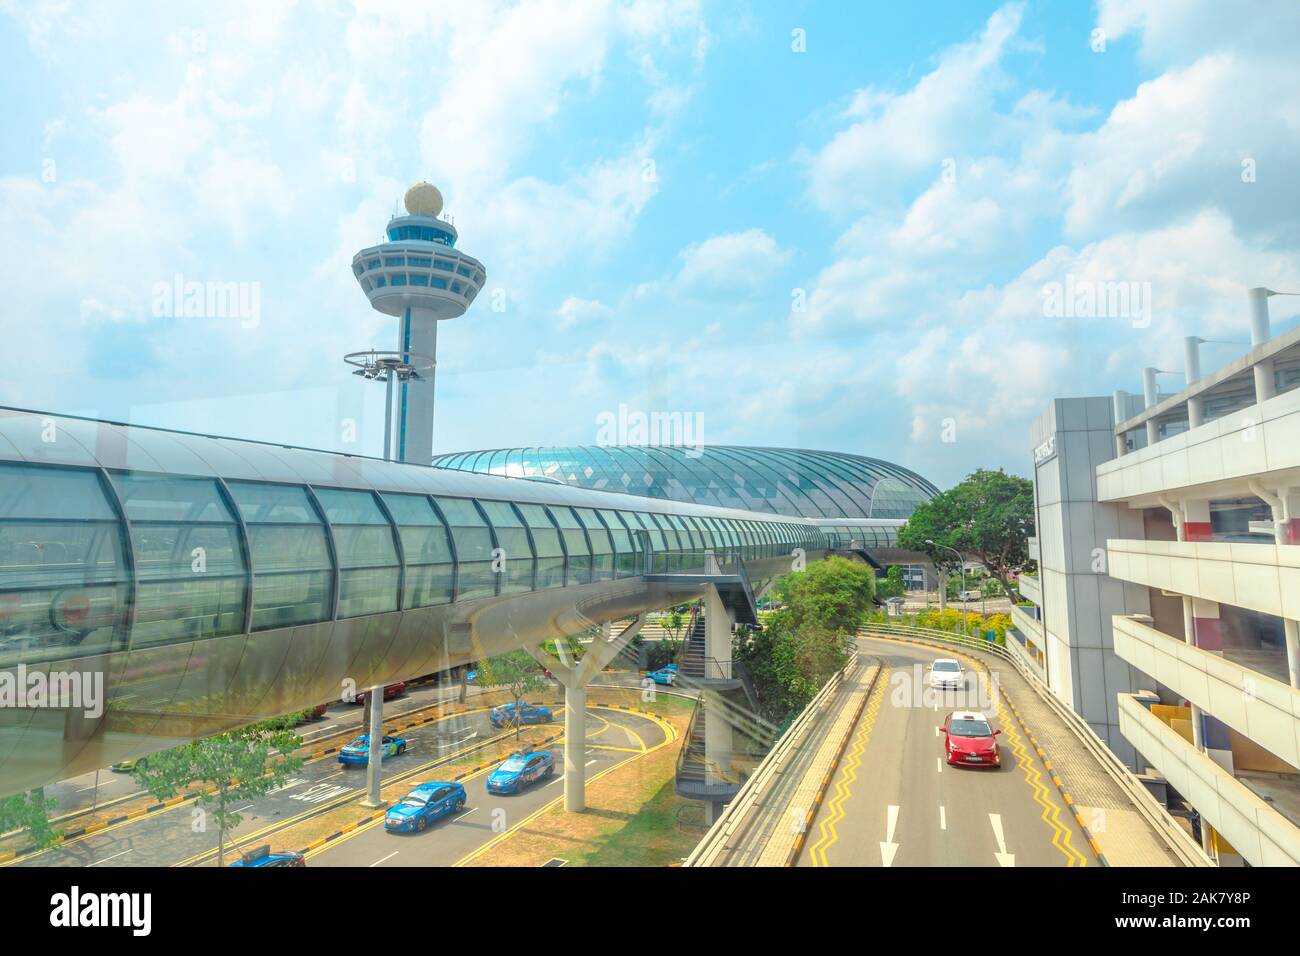 Singapur - Aug 8, 2019: Blick von Jewel verglasten Kuppel und Control Tower von neuen internationalen Flughafen Changi in Singapur eröffnet im April 2019. Stockfoto